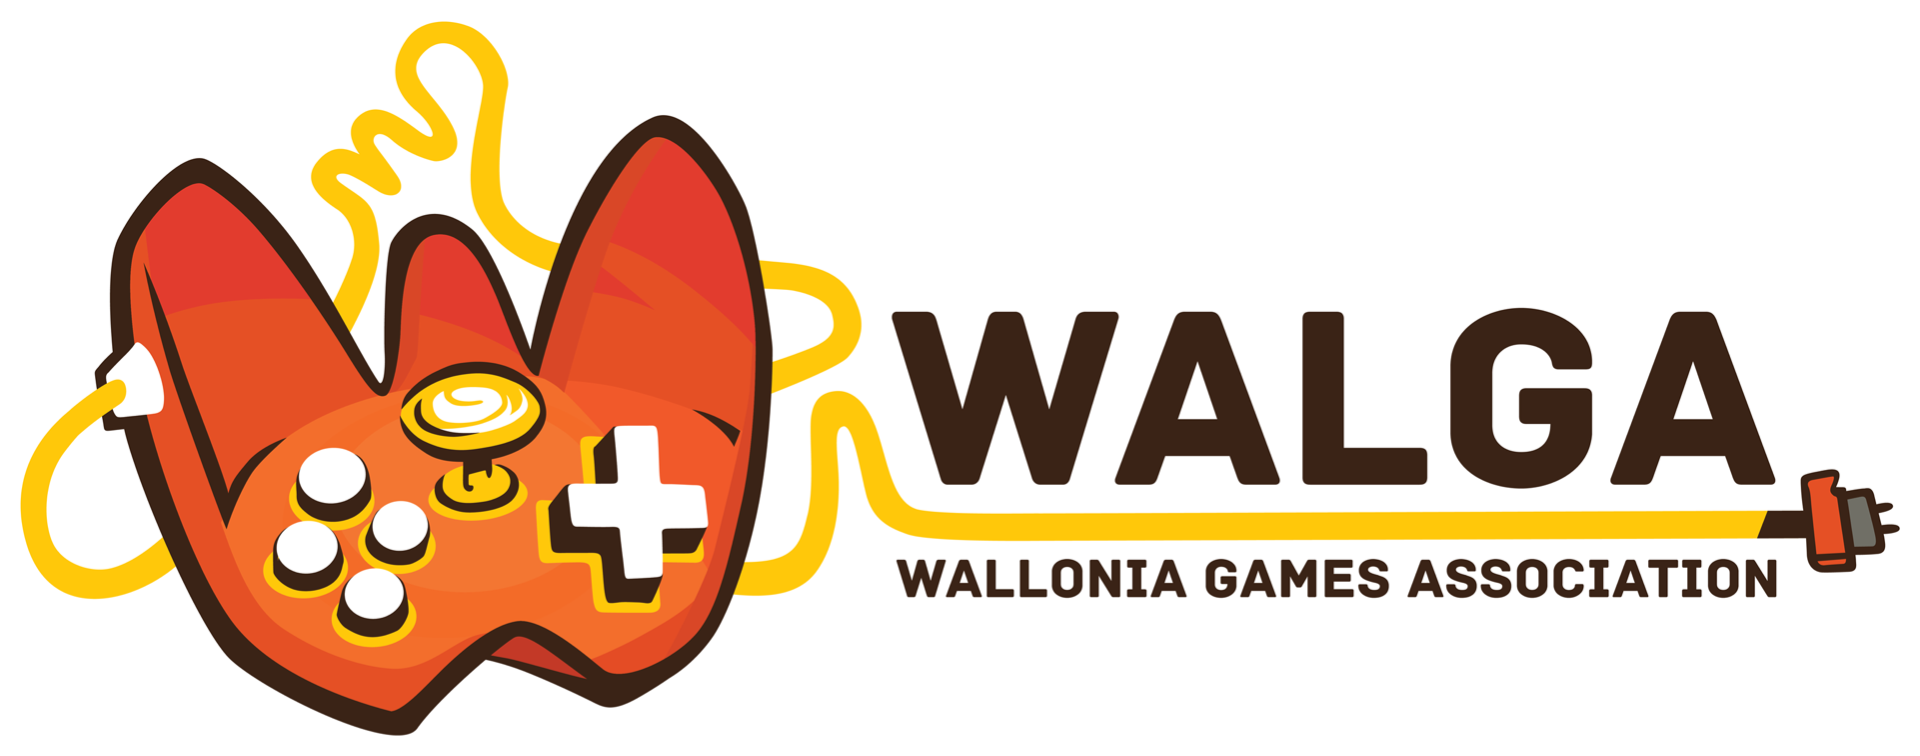 Walga_Logo